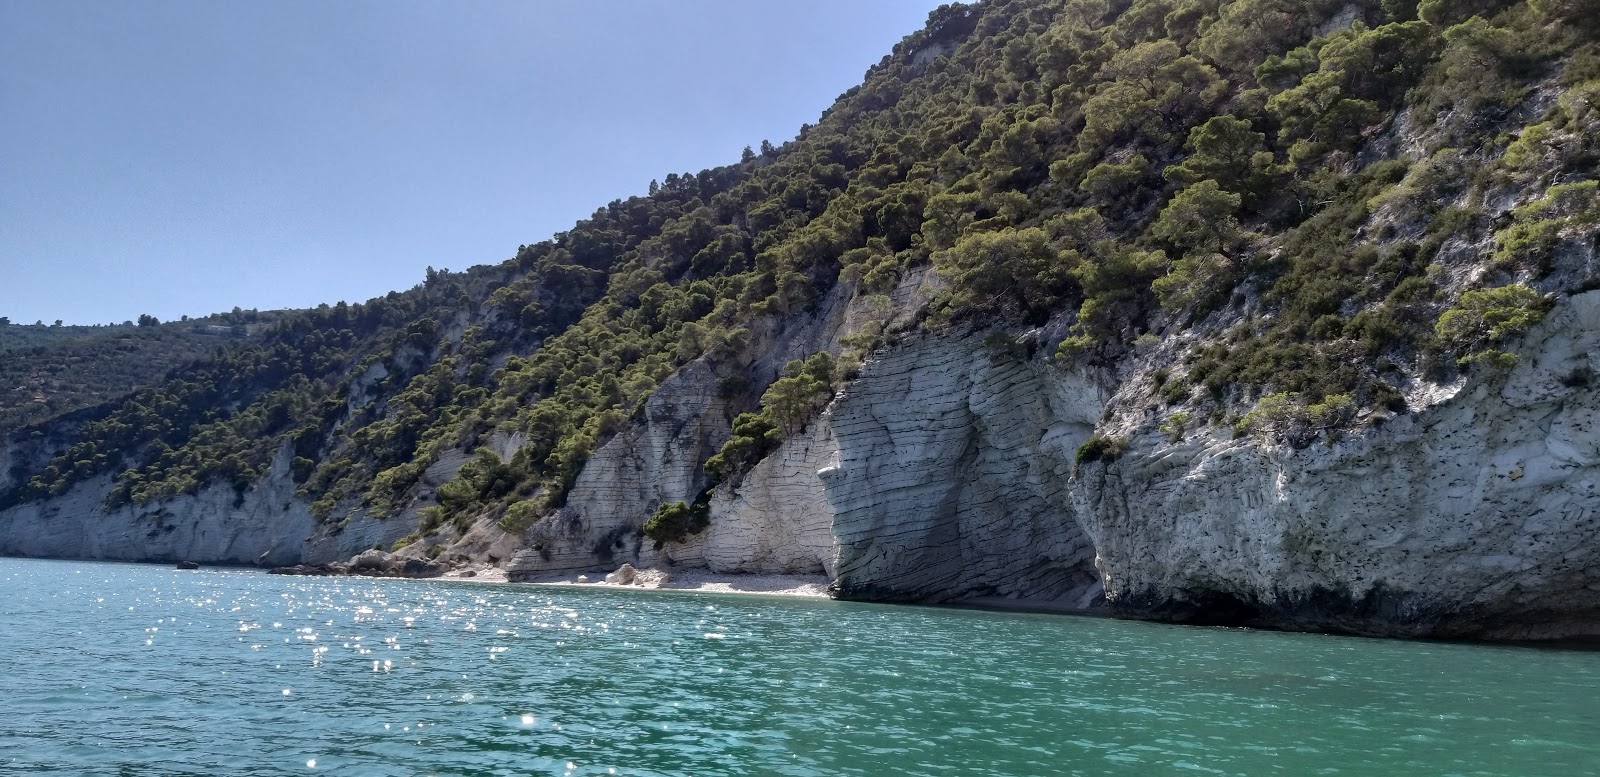 Pietre Nere'in fotoğrafı hafif ince çakıl taş yüzey ile